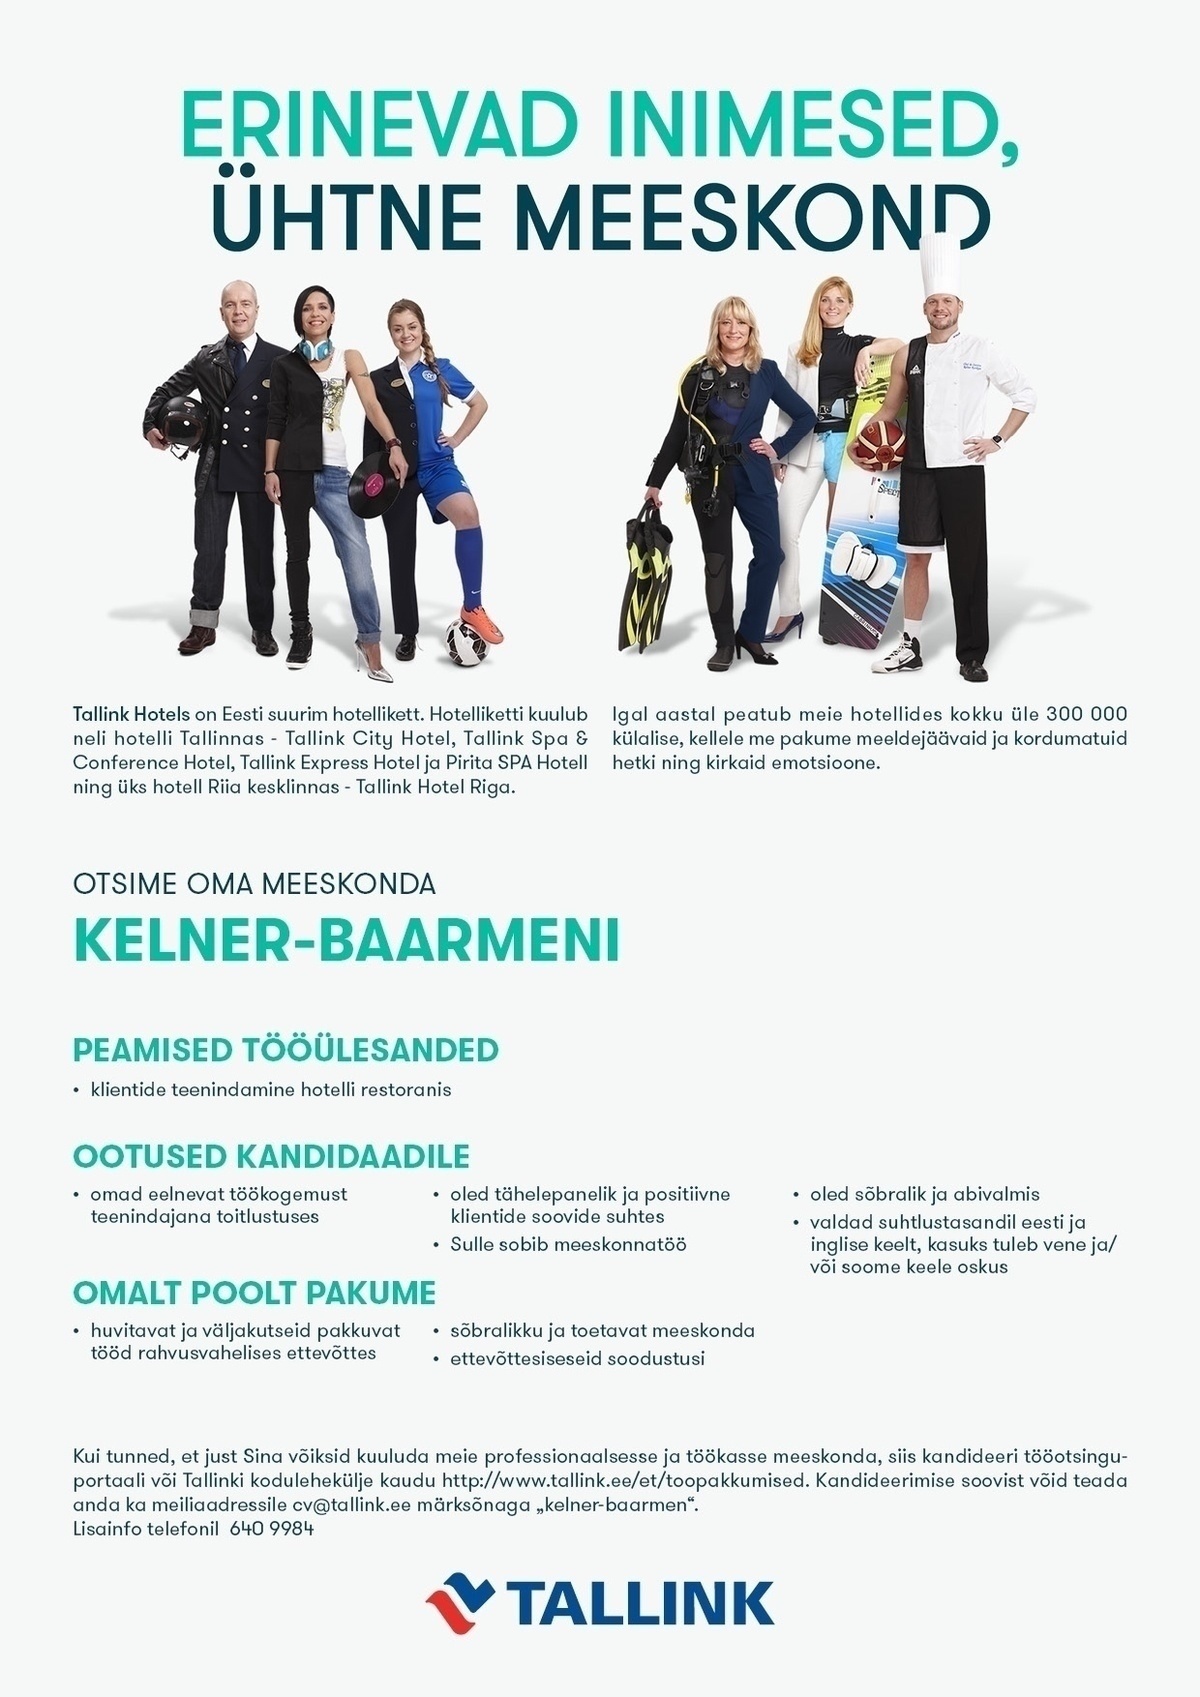 Tallink Grupp AS Kelner-Baarmen (Pirita Spa Hotell)